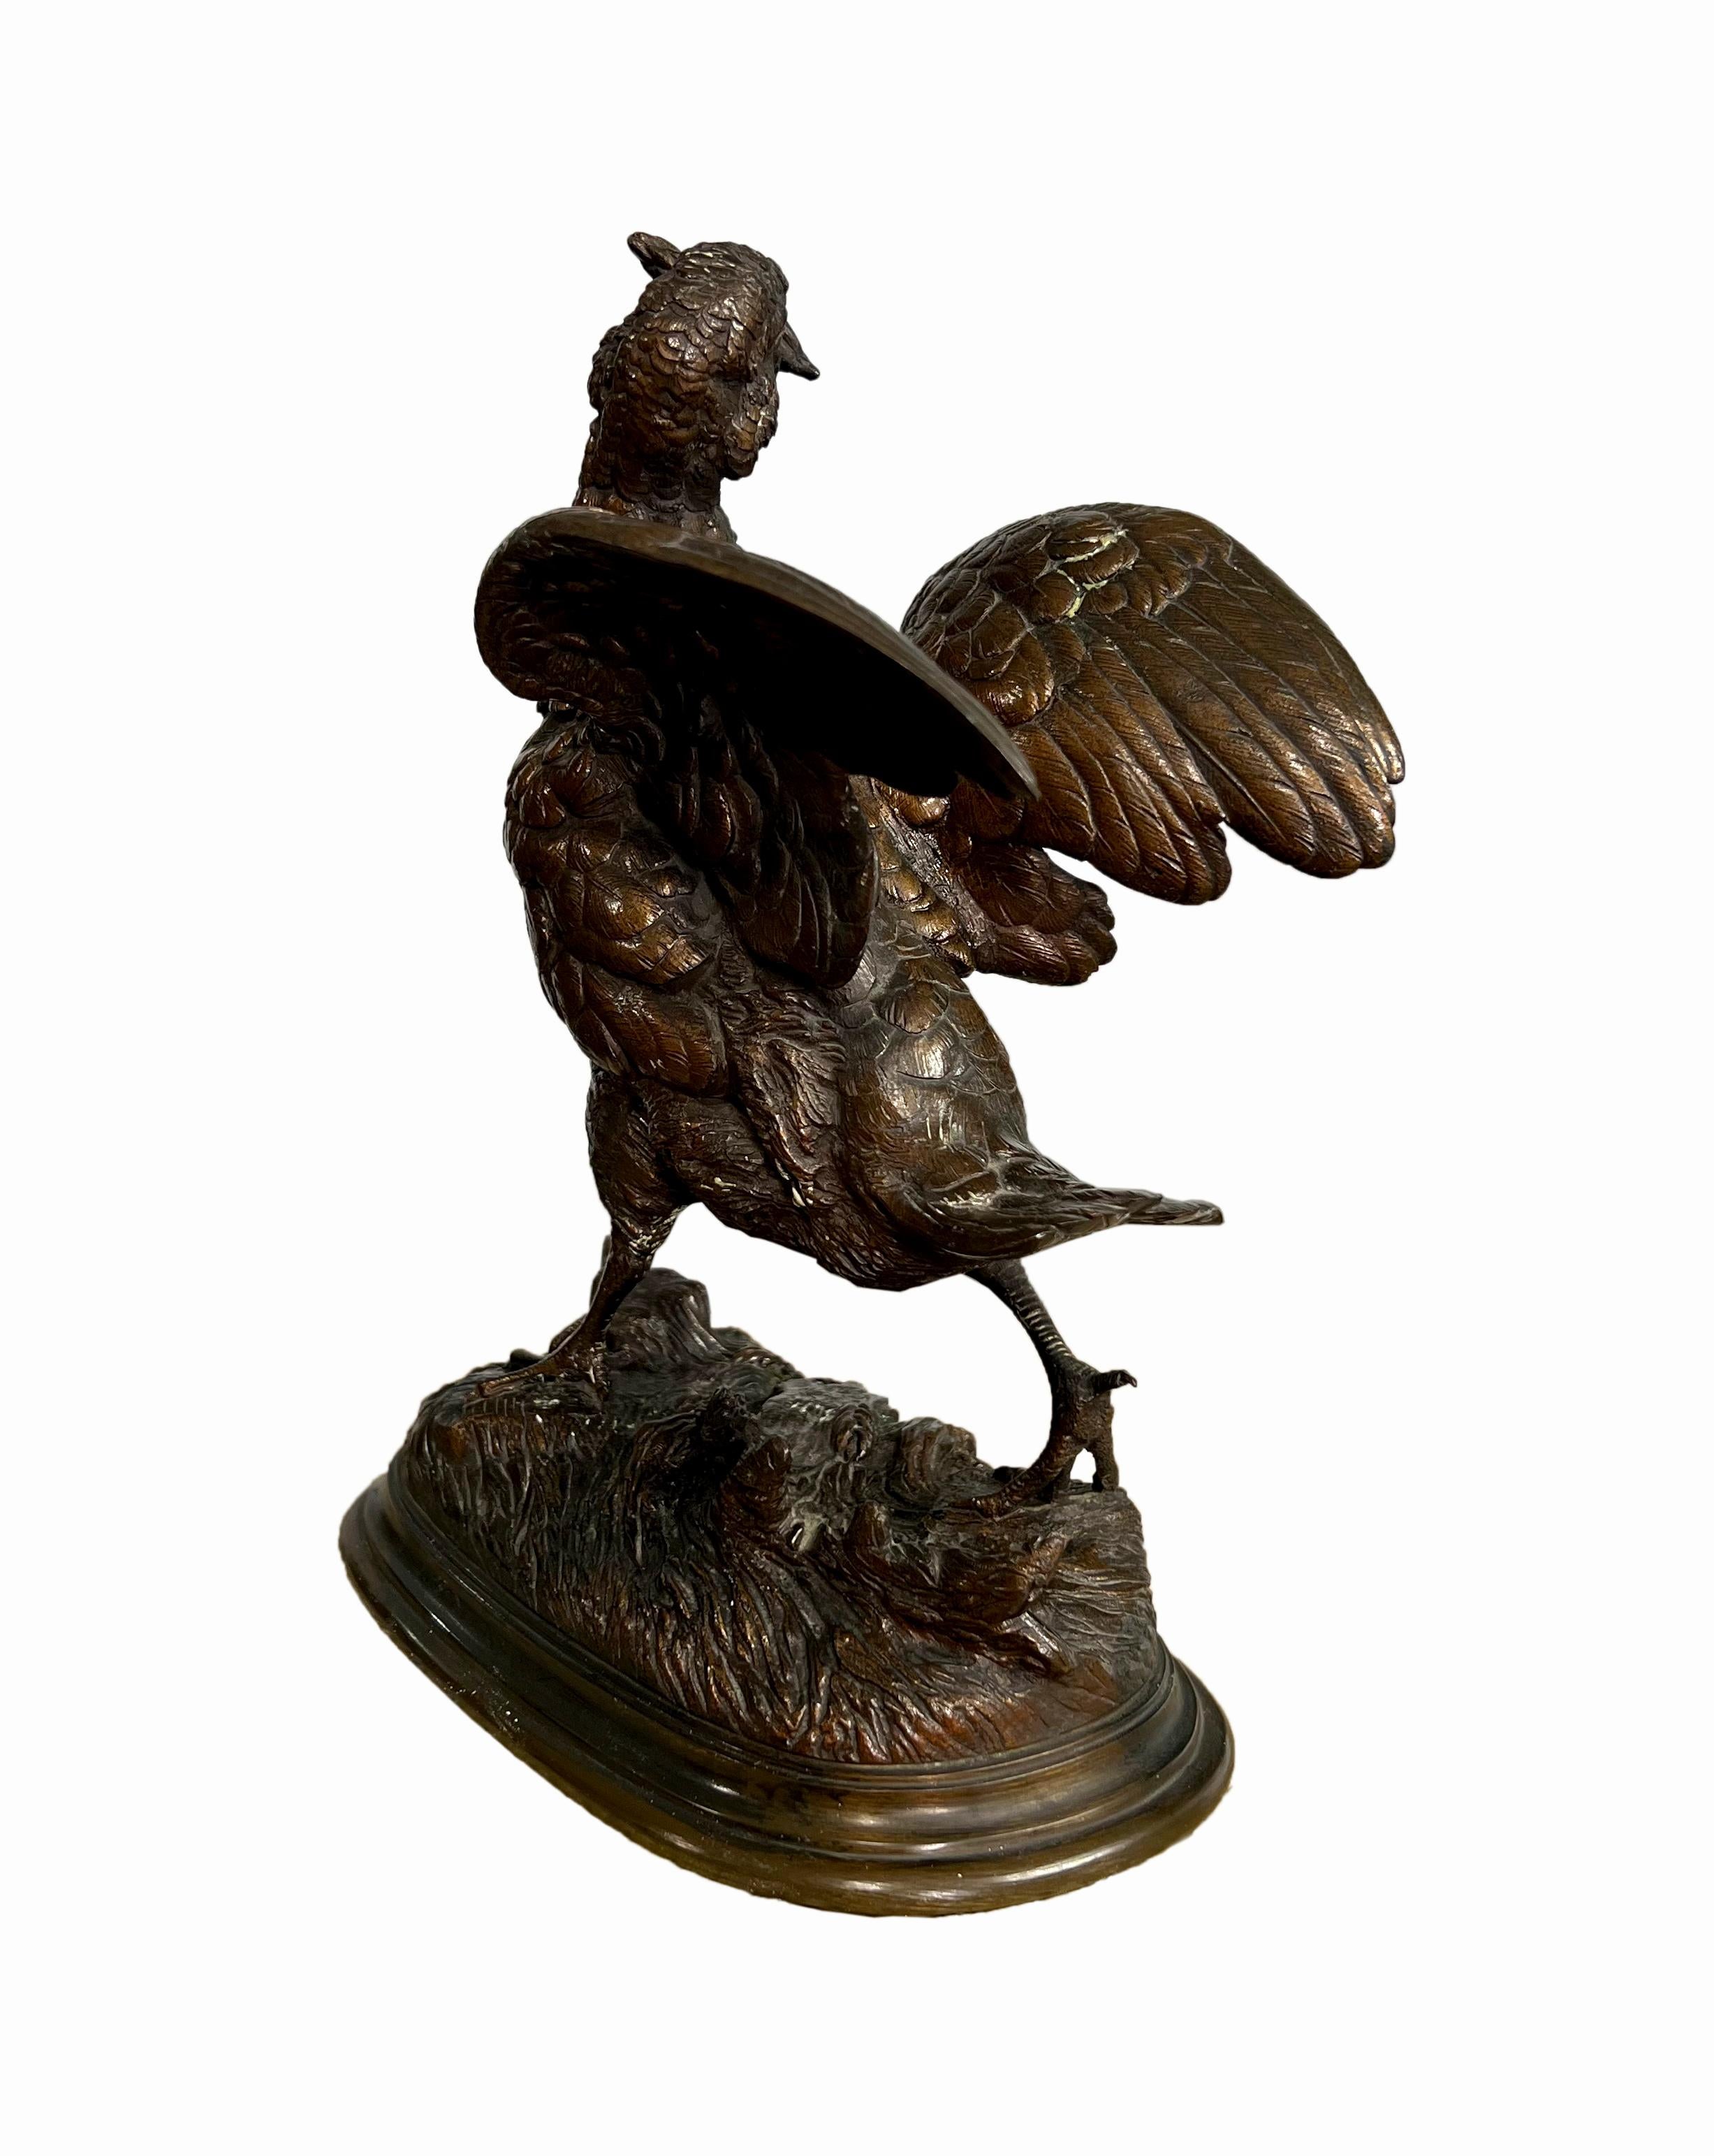 Französische patinierte Bronzeskulptur eines Schneehuhns mit ausgebreiteten Flügeln, das eine Weizengarbe im Schnabel trägt, erhöht auf ovalem Sockel, nach einem Modell von Alfred Barye (1839-1882)
Eingeschnitten: BARYE.

Höhe